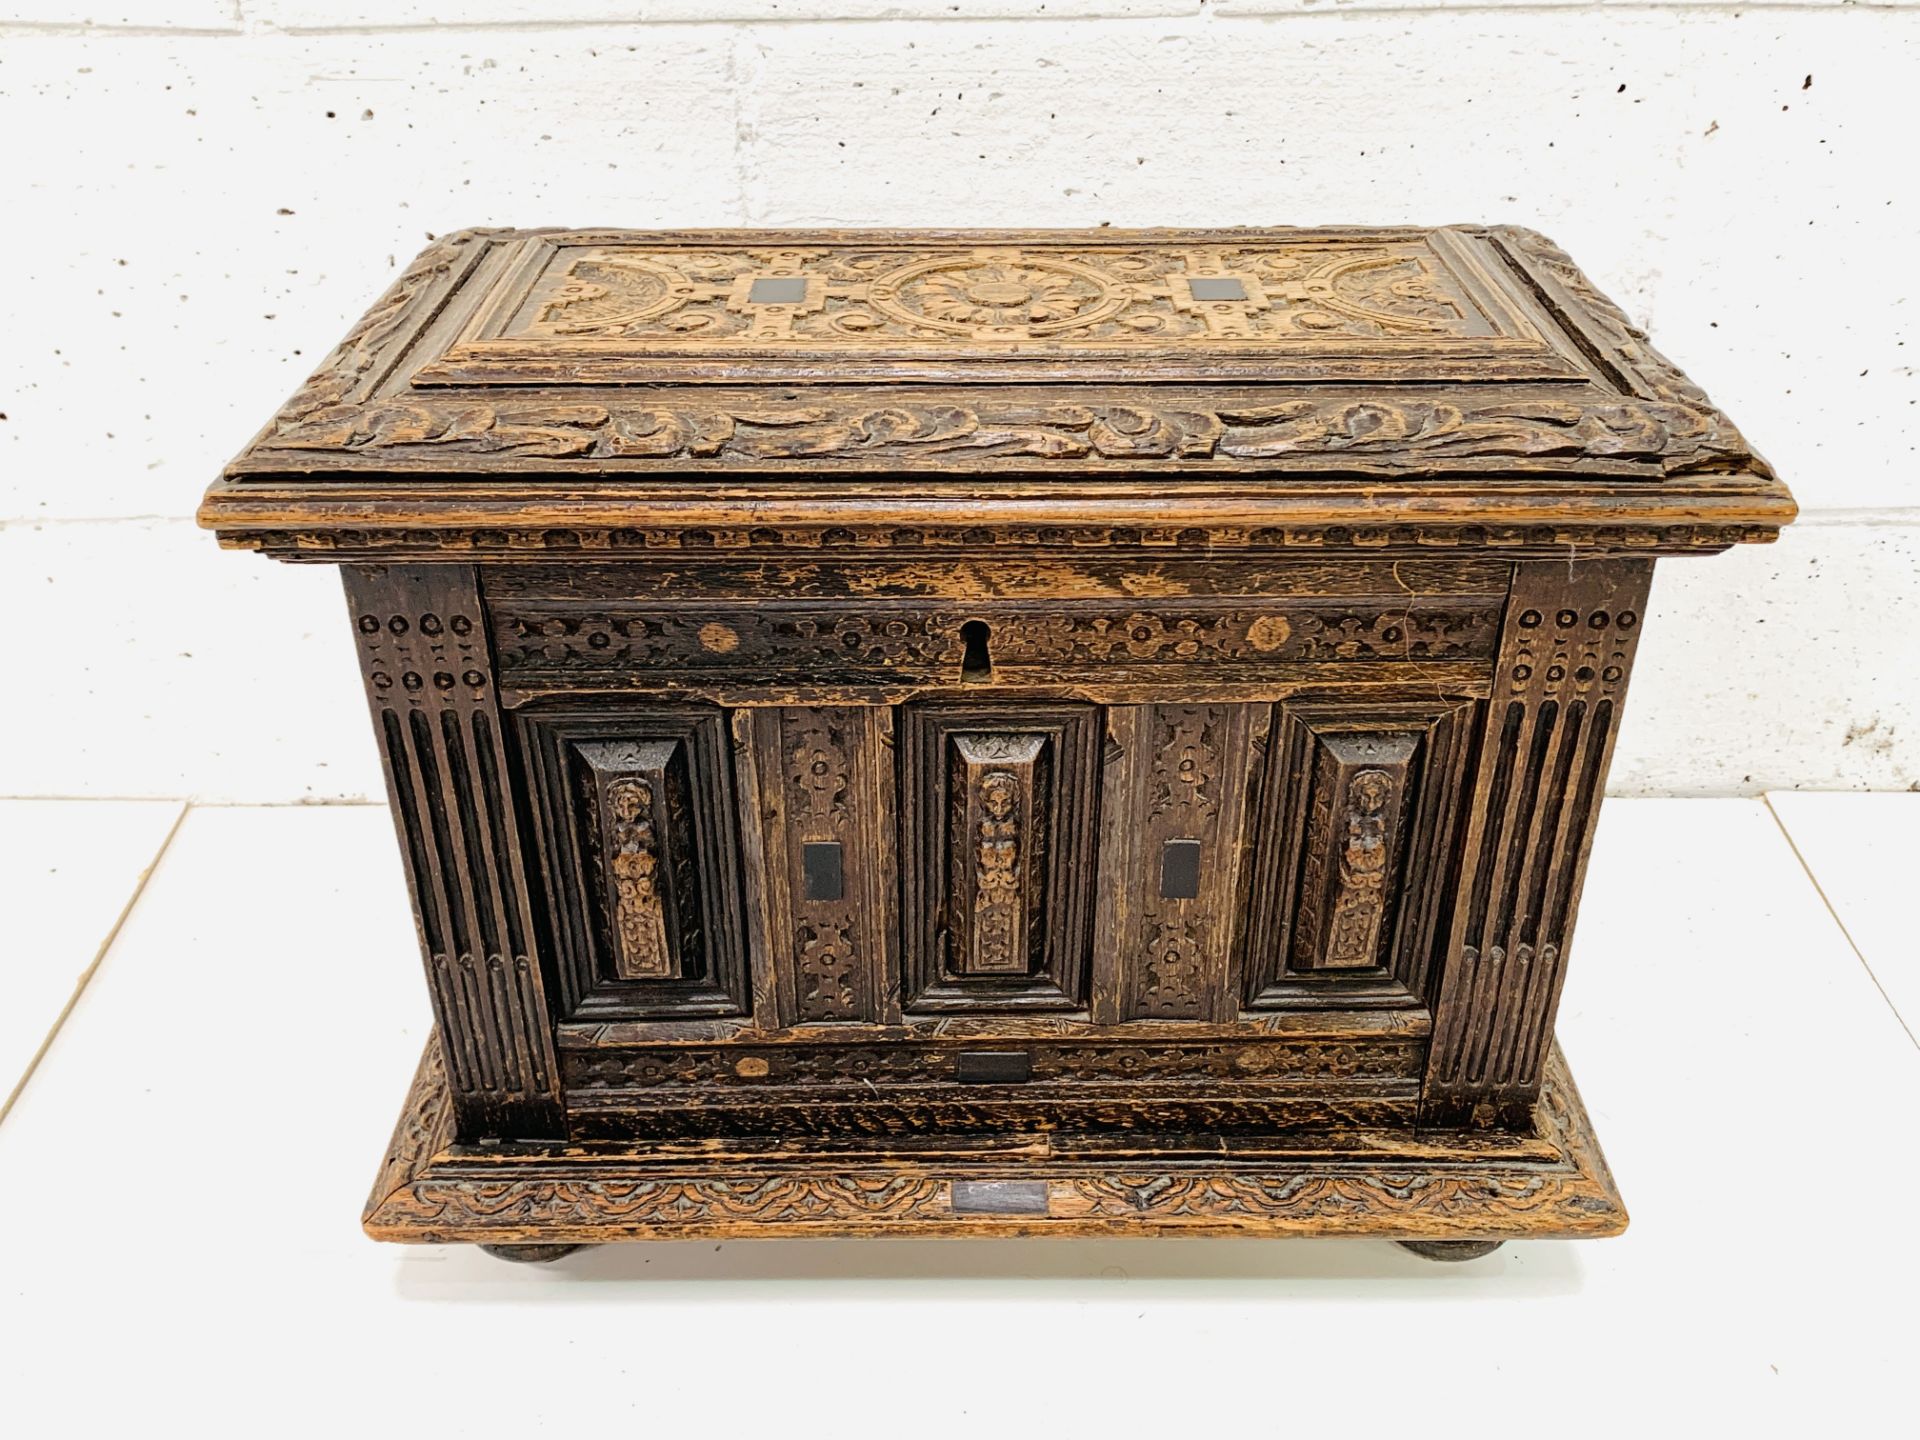 Carved oak casket with ebony inserts